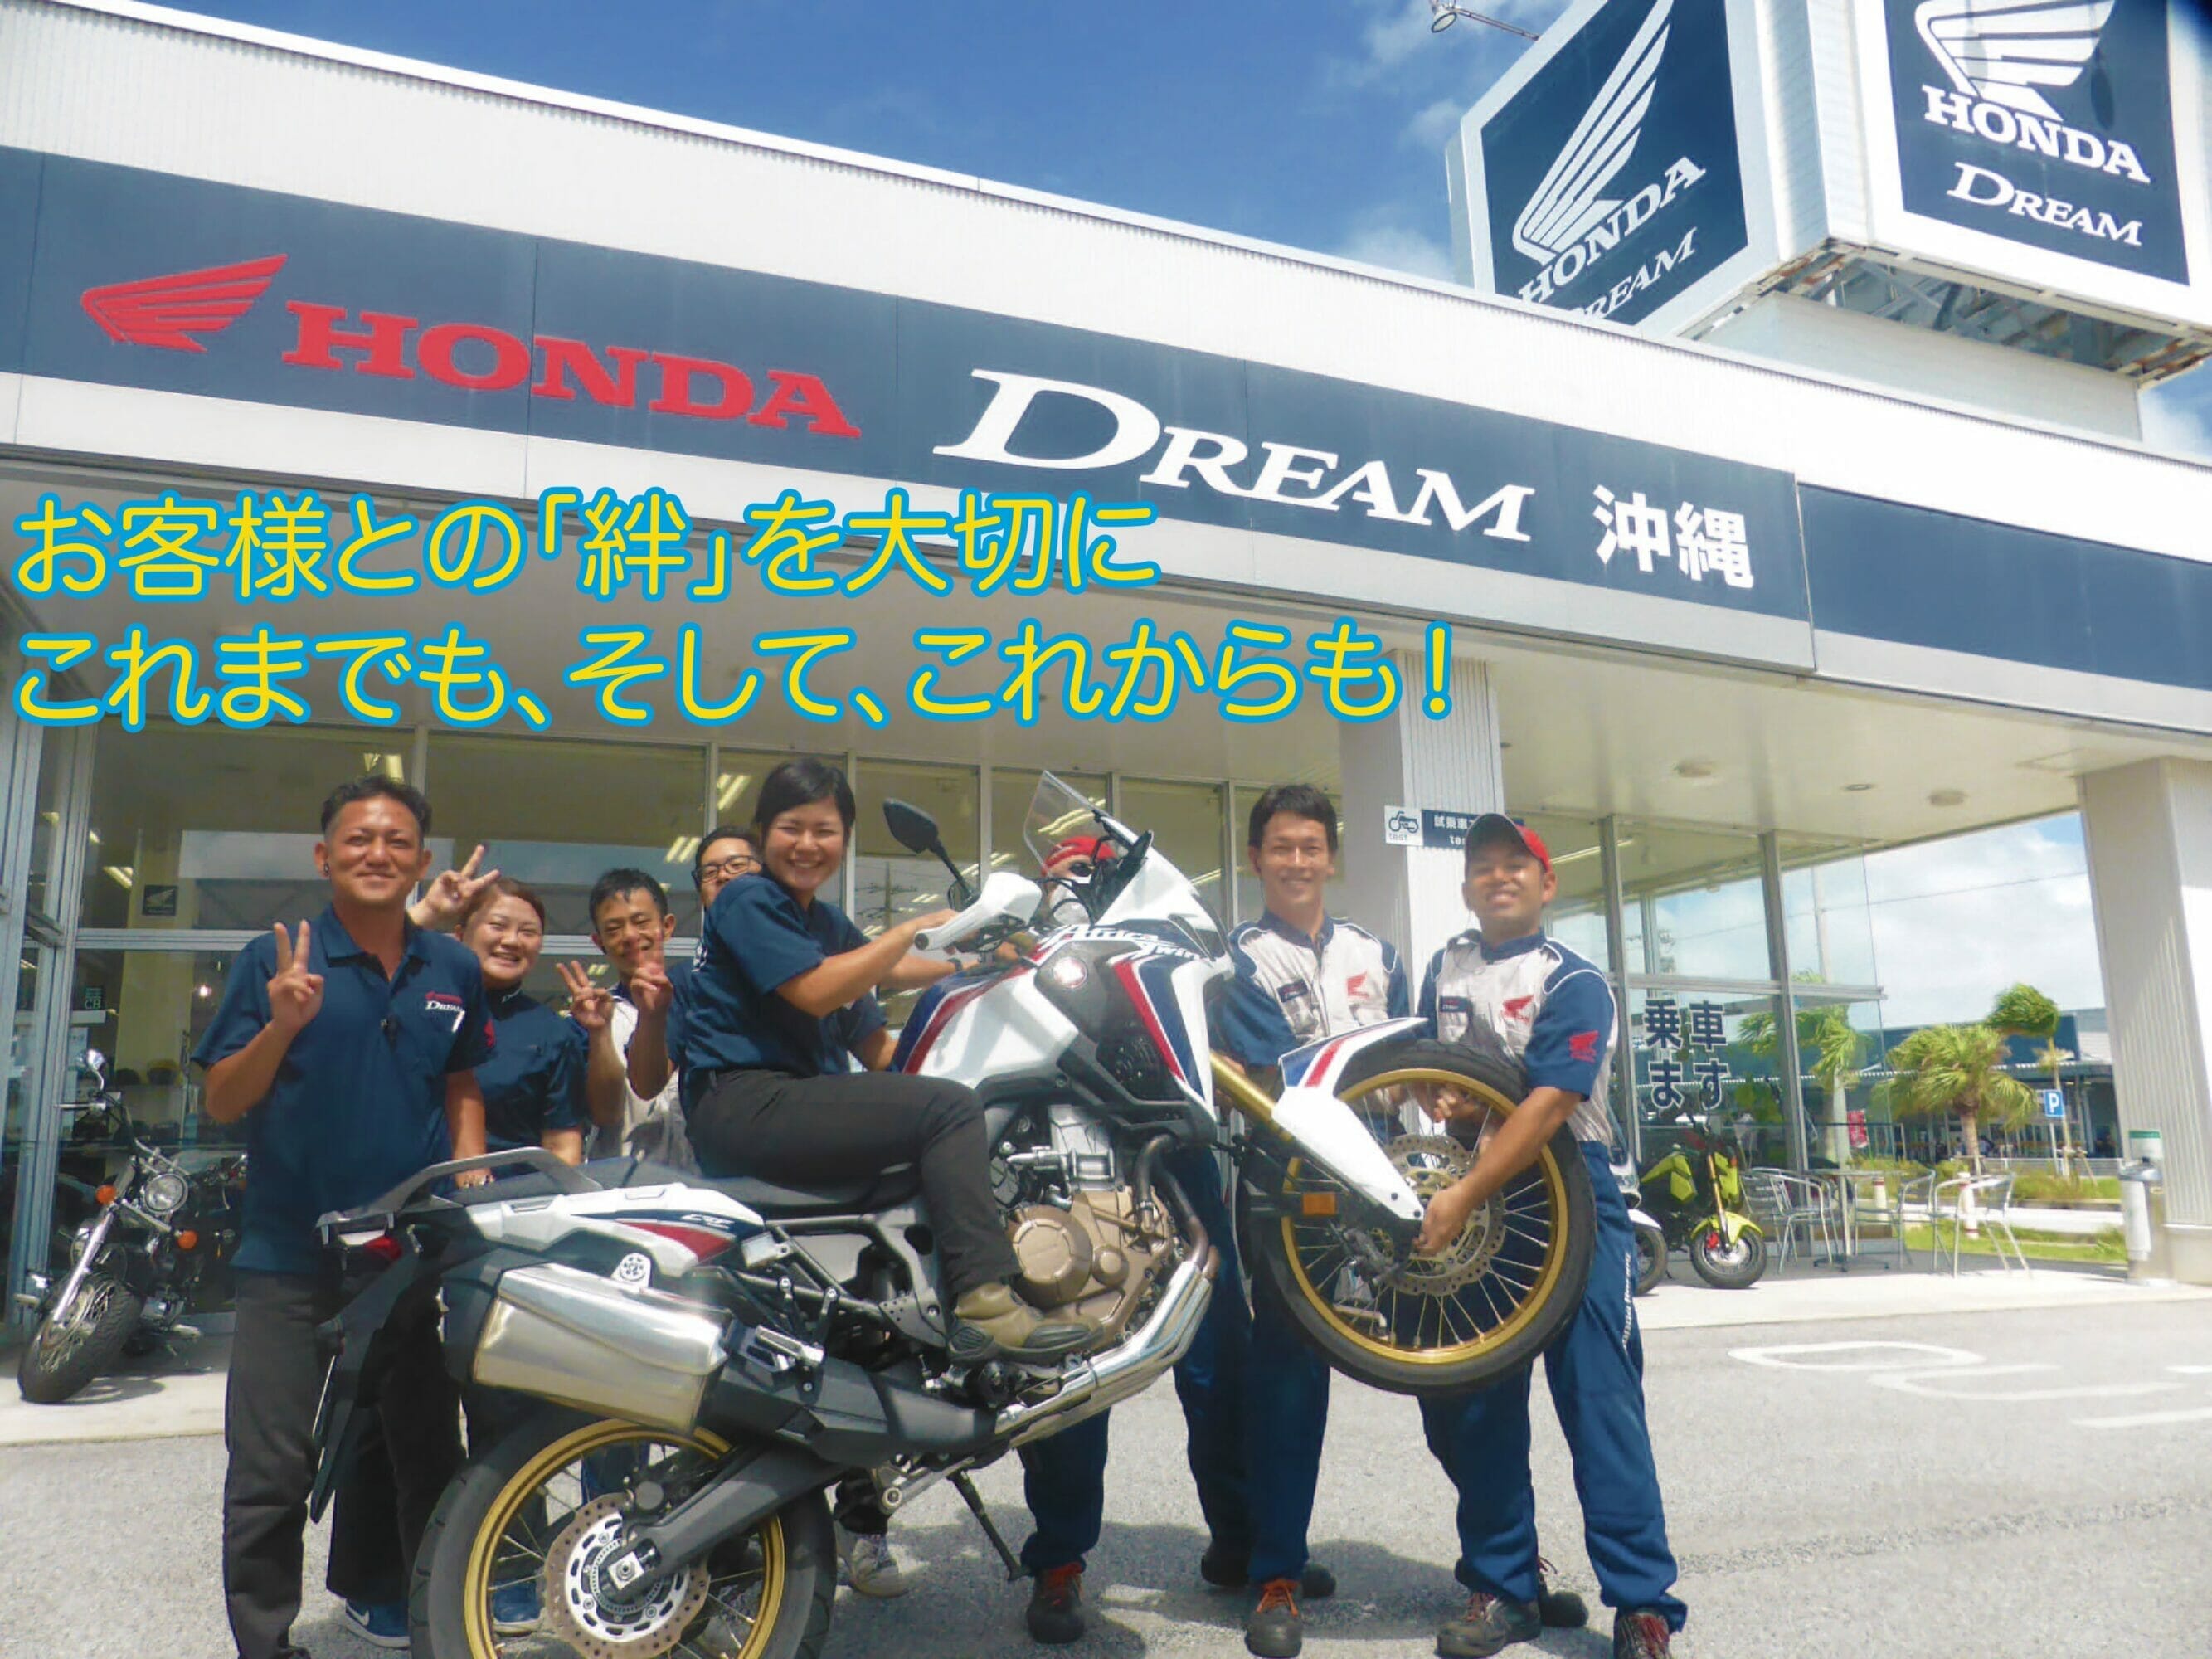 Vol 28 Honda Dream Okinawa バイクショップレポート 沖縄の新車 中古バイク パーツは沖縄専門 クロスバイク